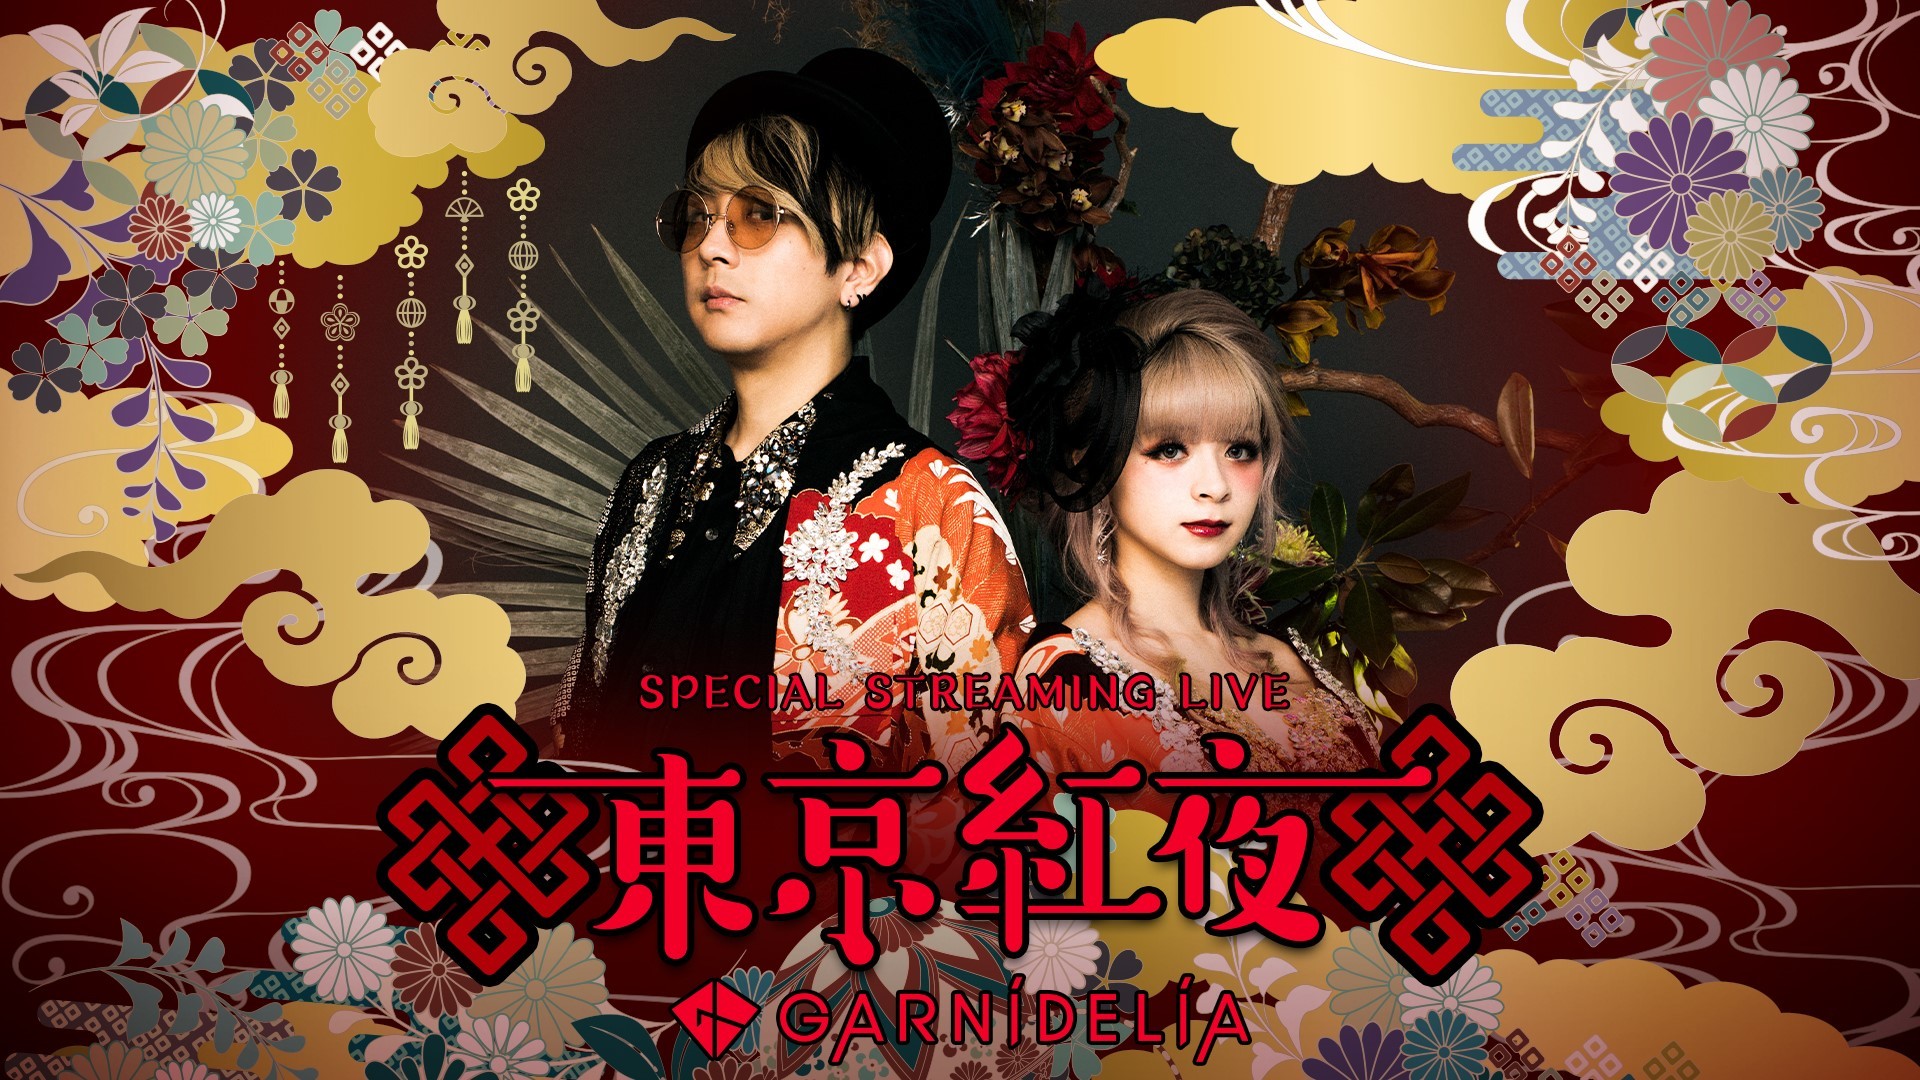 Garnidelia 新曲 Star Trail の配信 ストリーミングライブ2nd Stage 東京紅夜 の開催を発表 Spice エンタメ特化型情報メディア スパイス